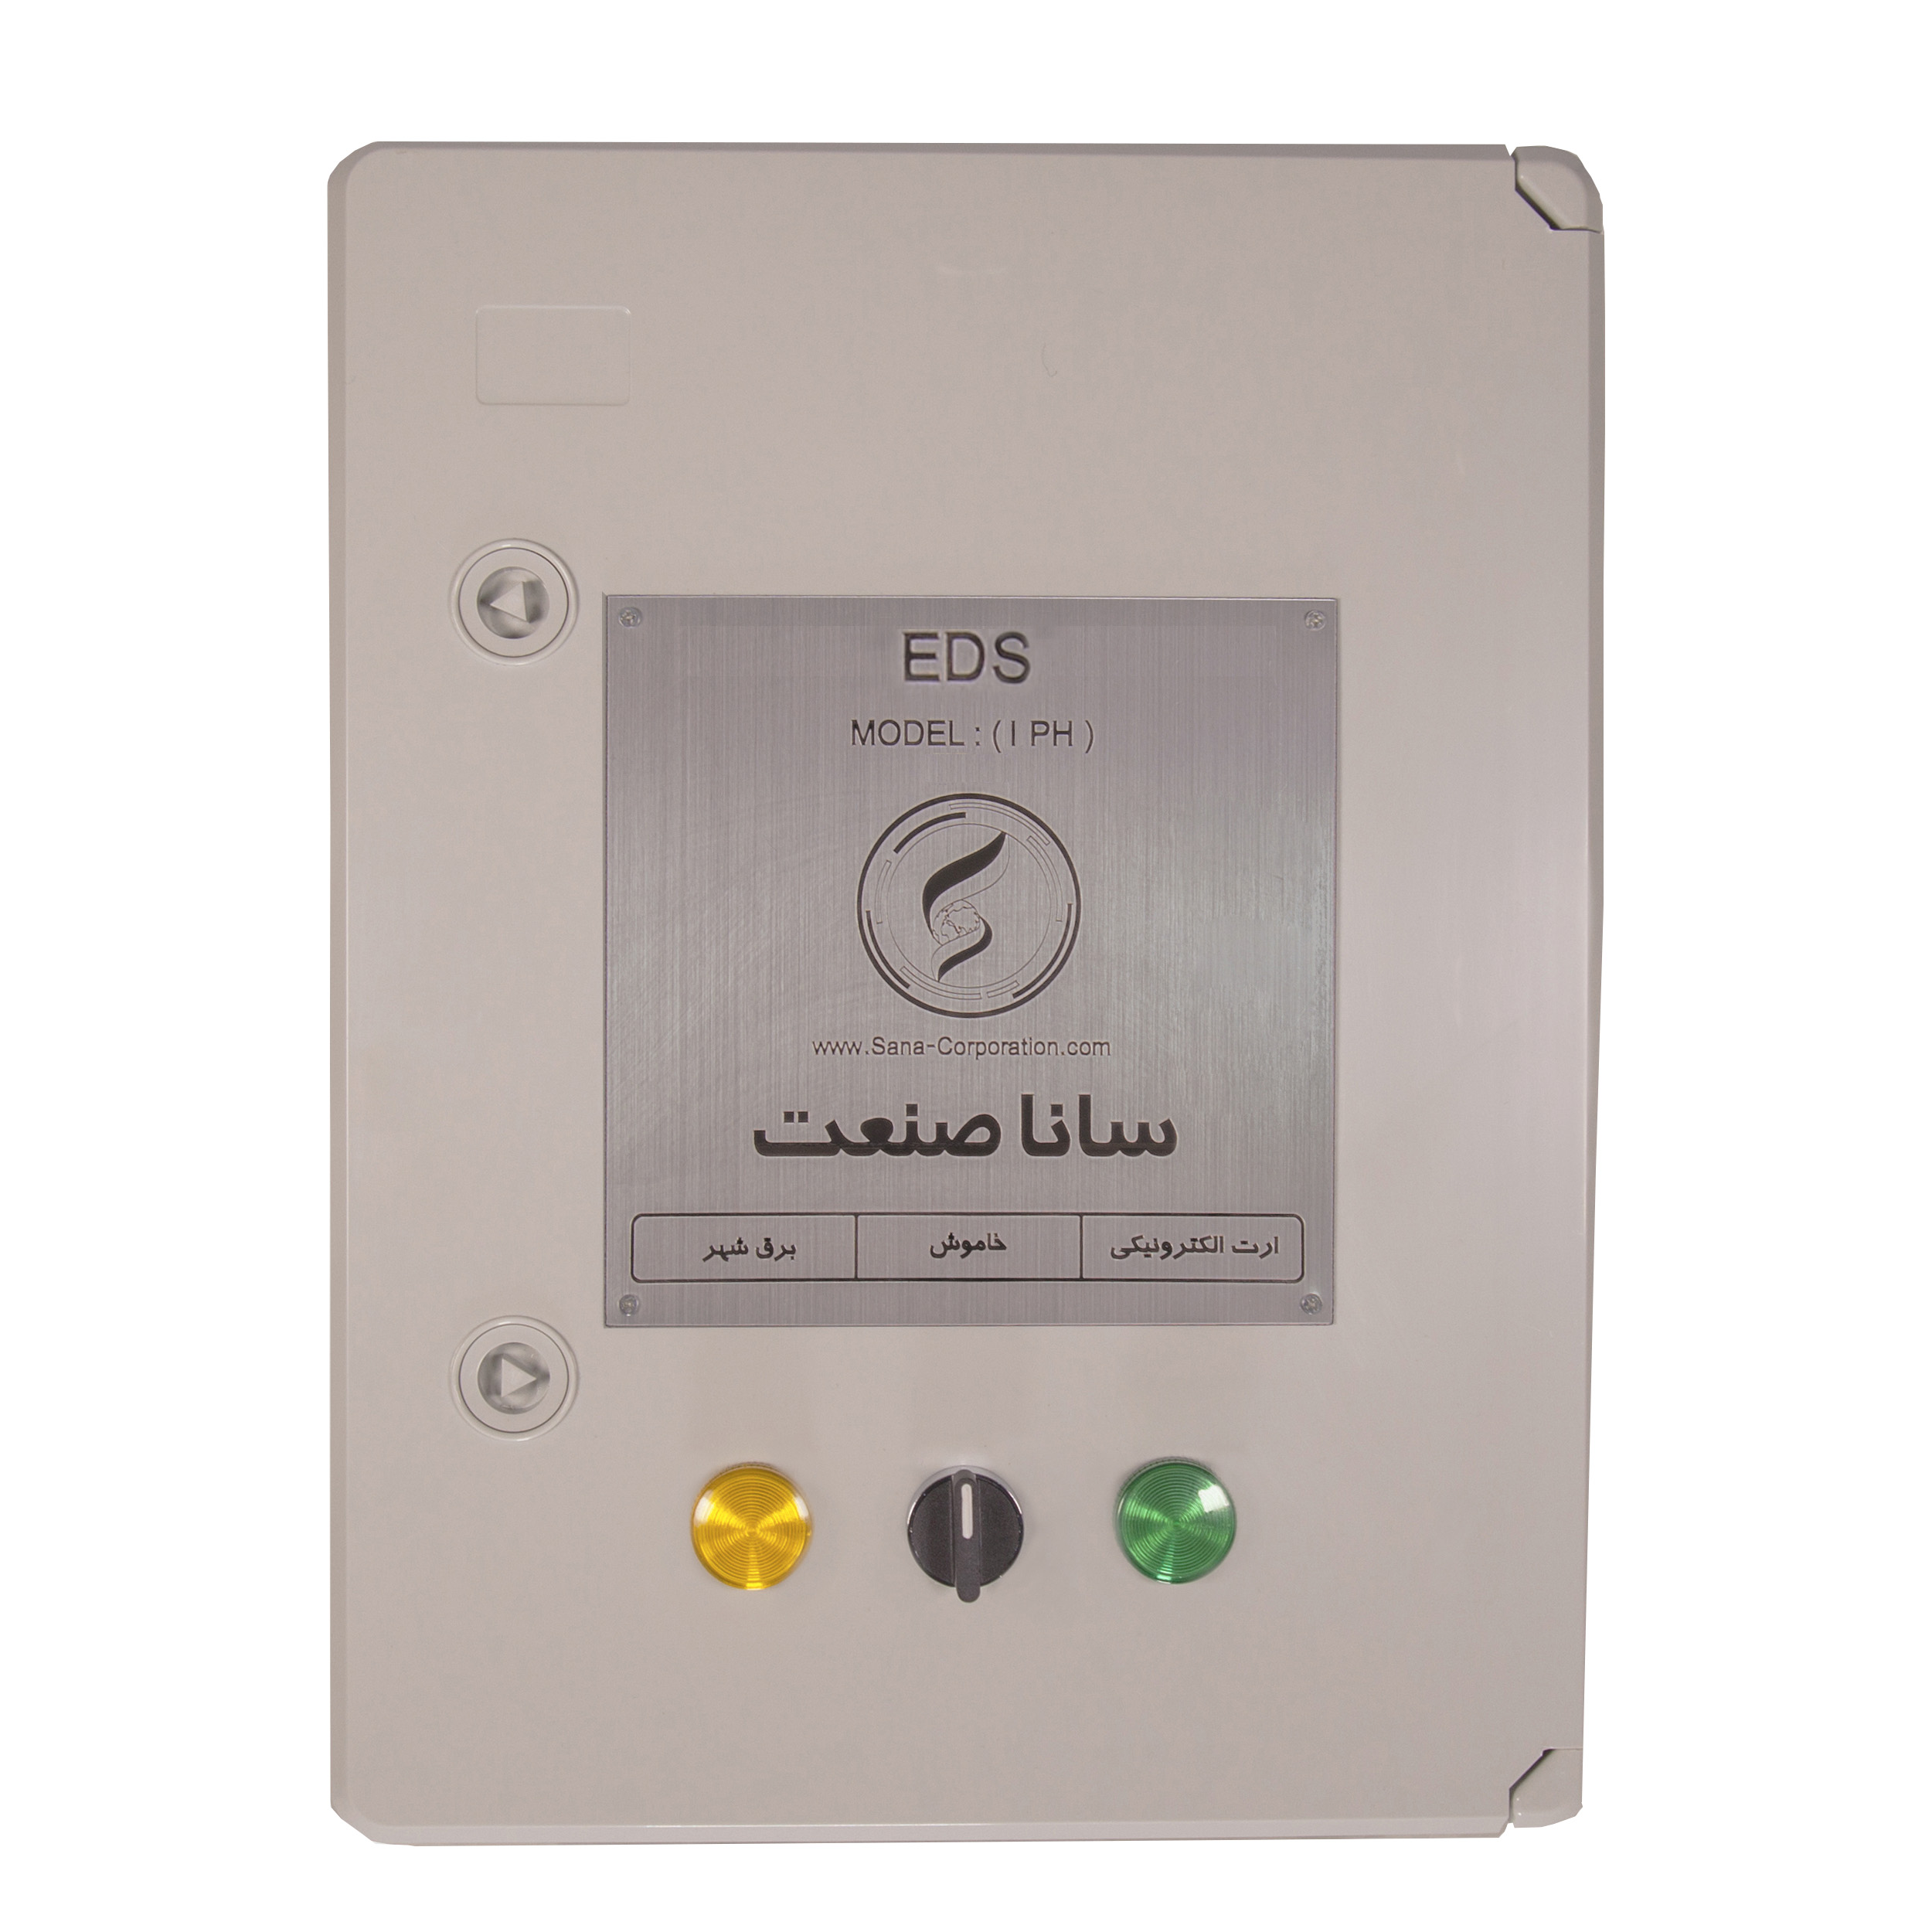 سیستم EDS (ارت الکتریکی)